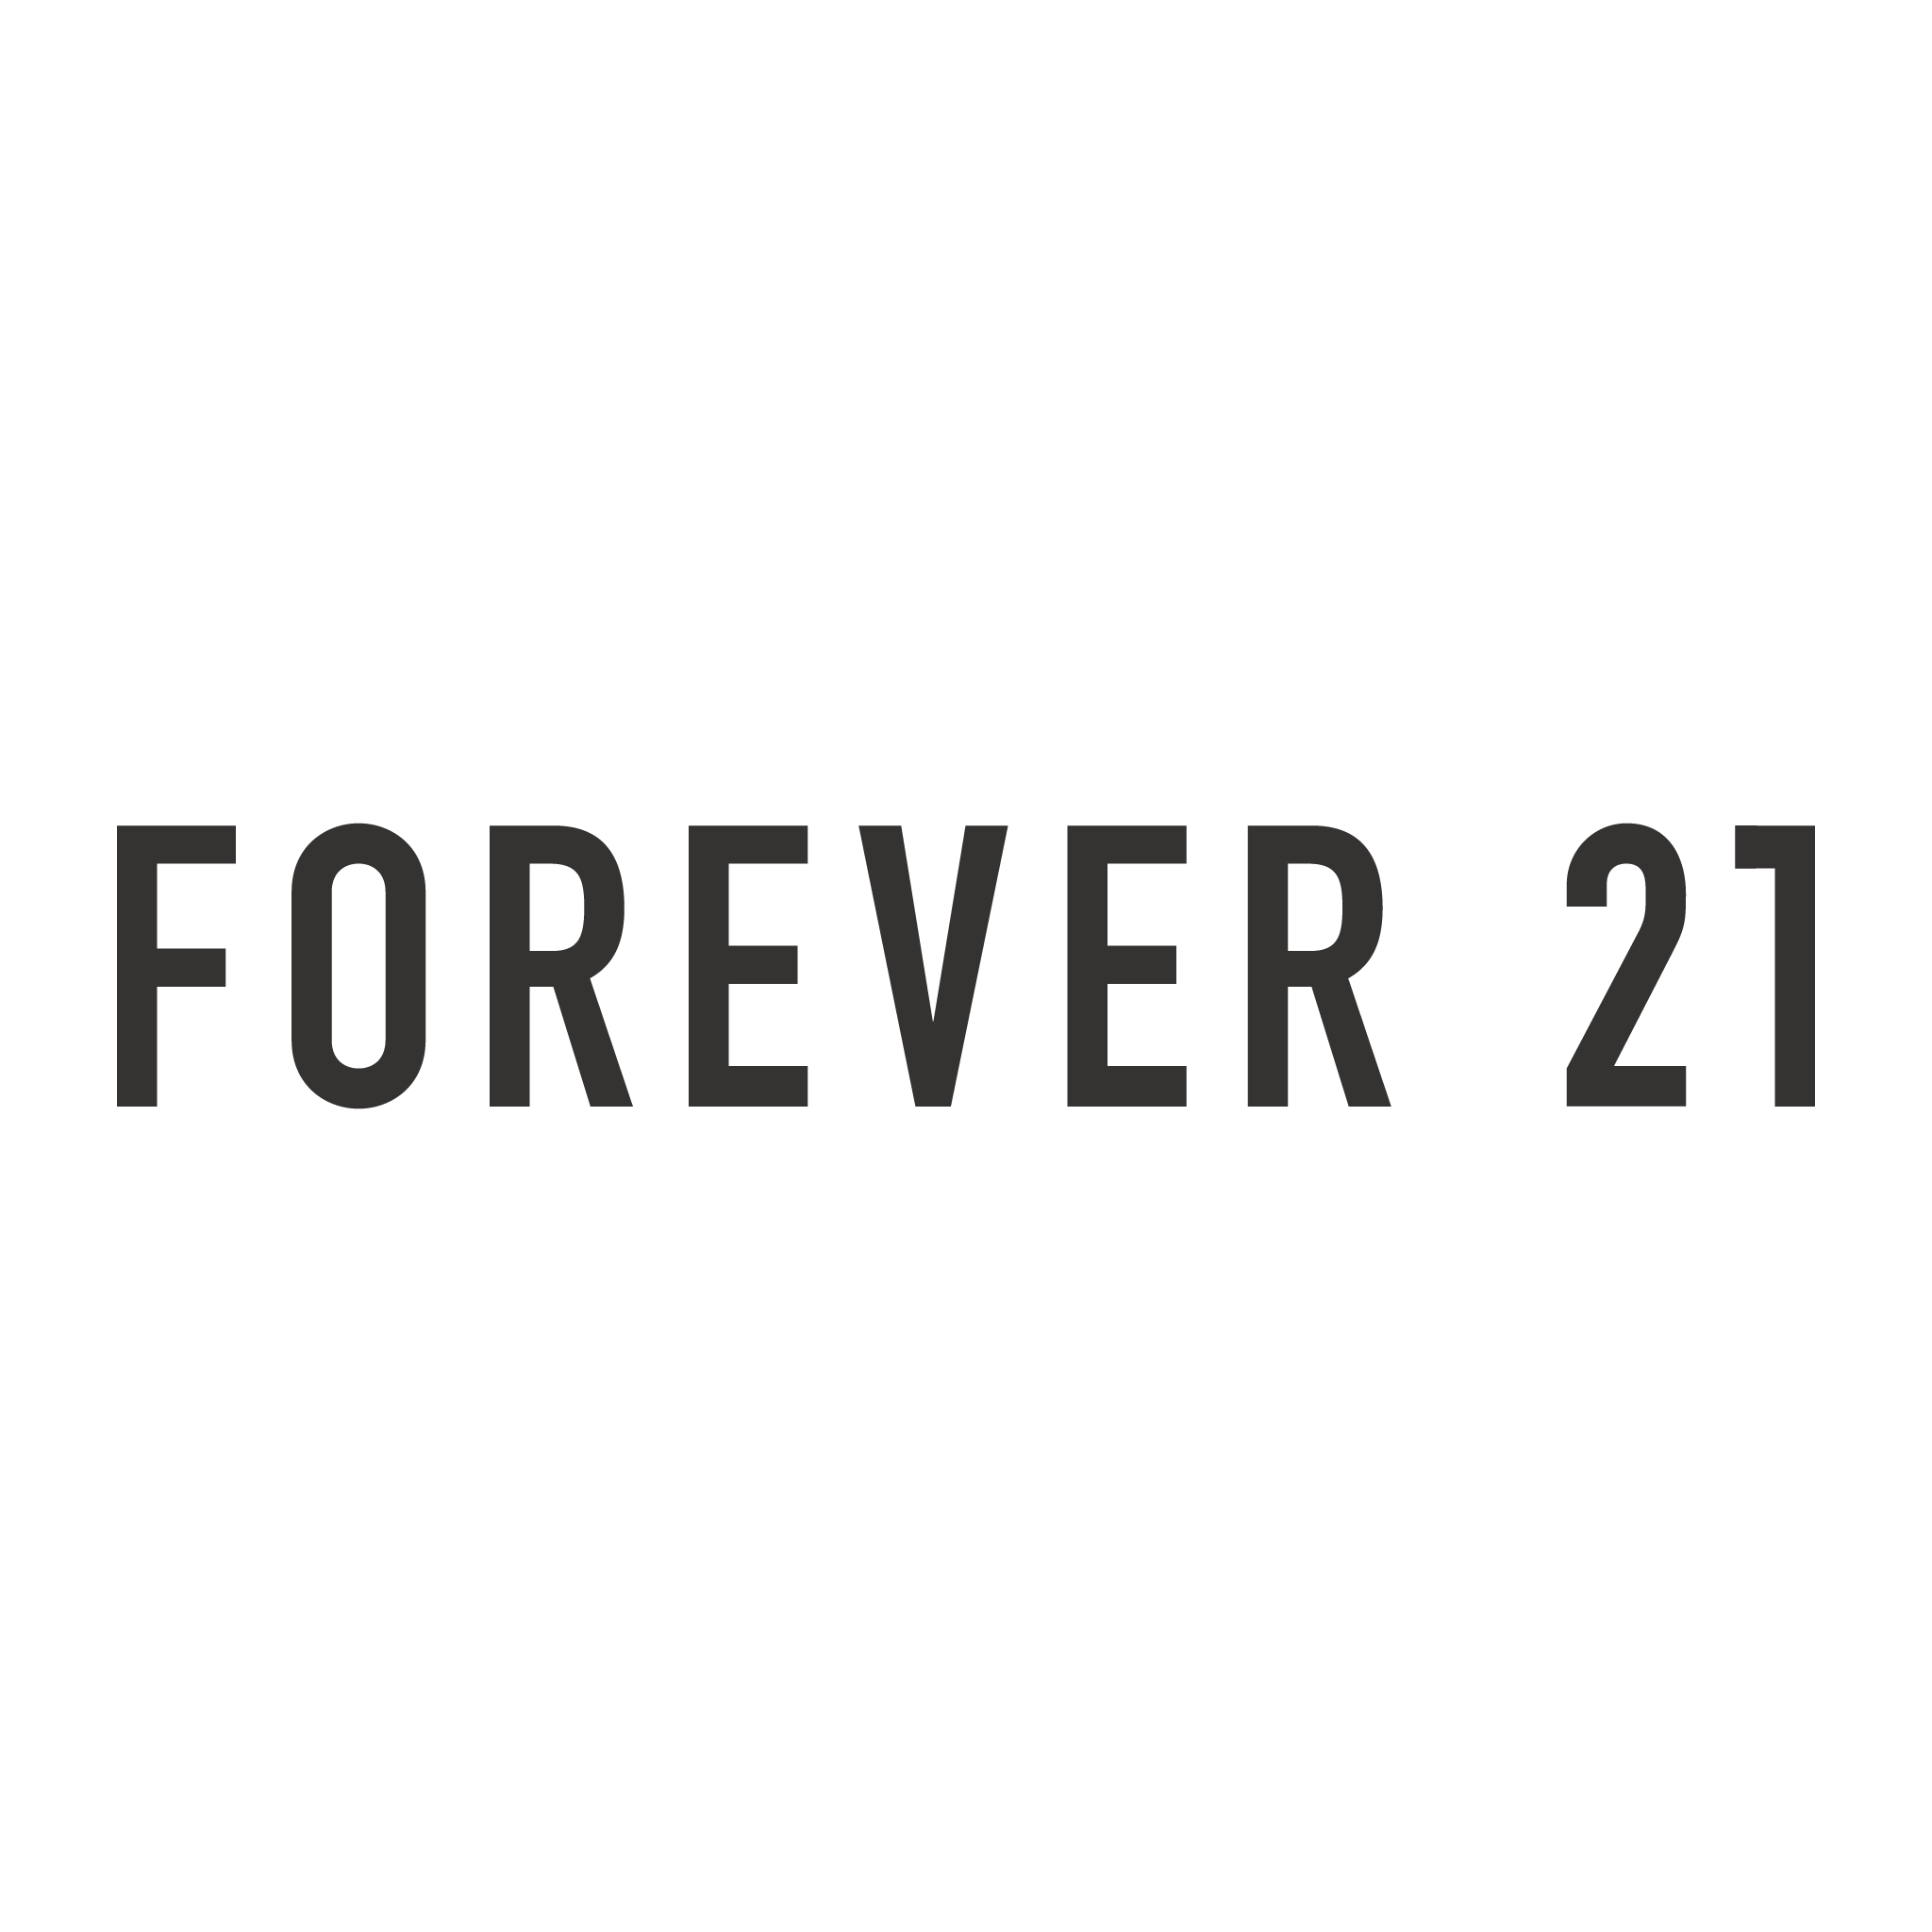 vector forever 21